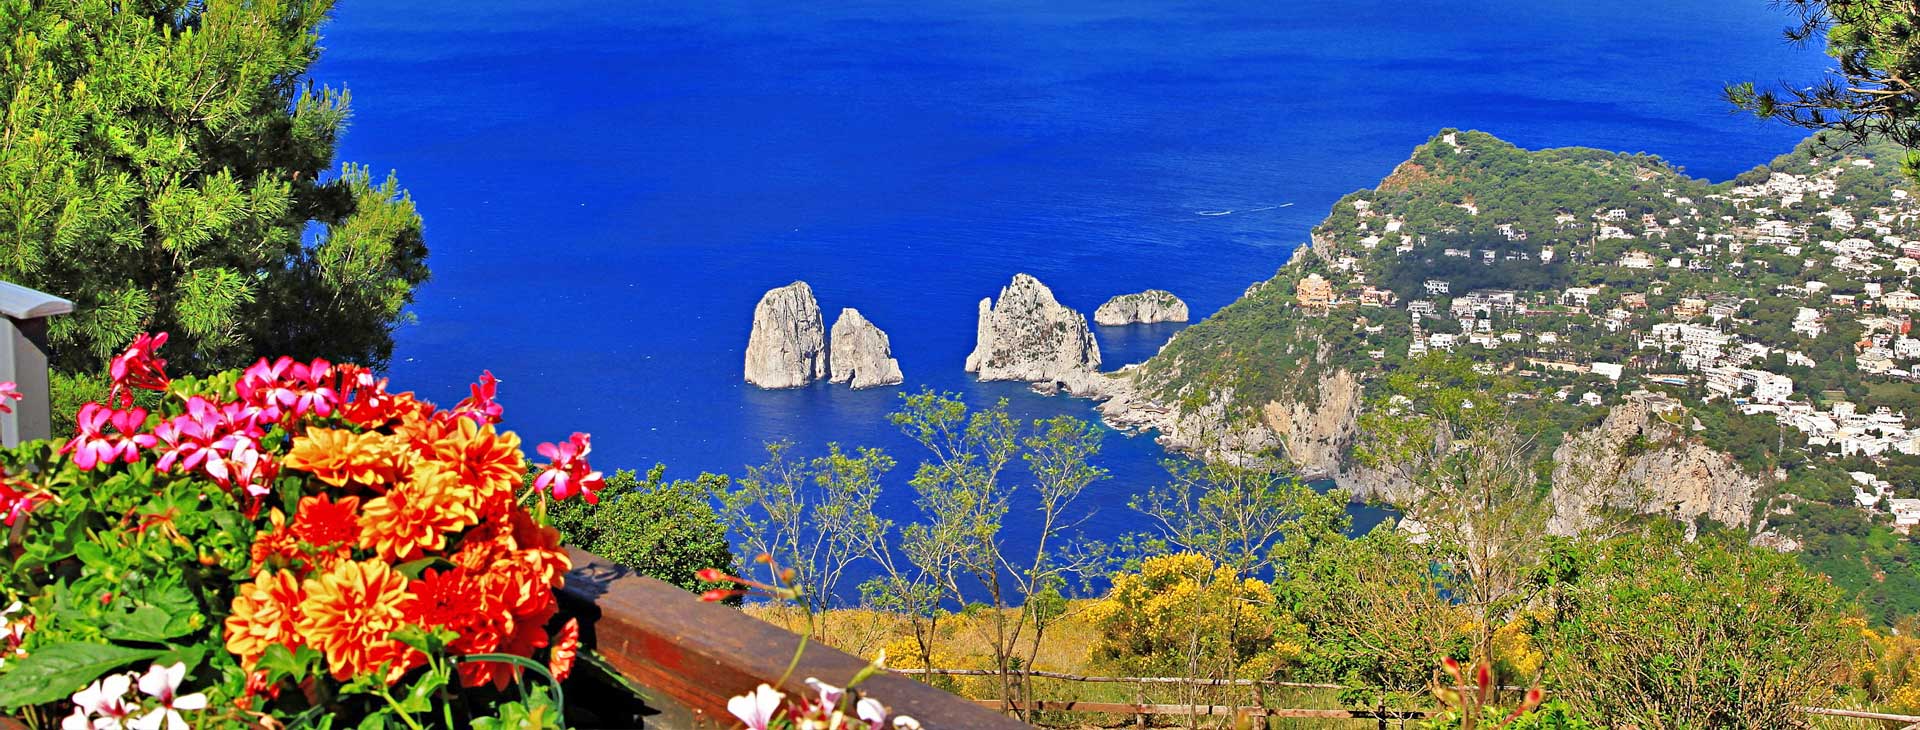 View of Capri Island with Faraglioni